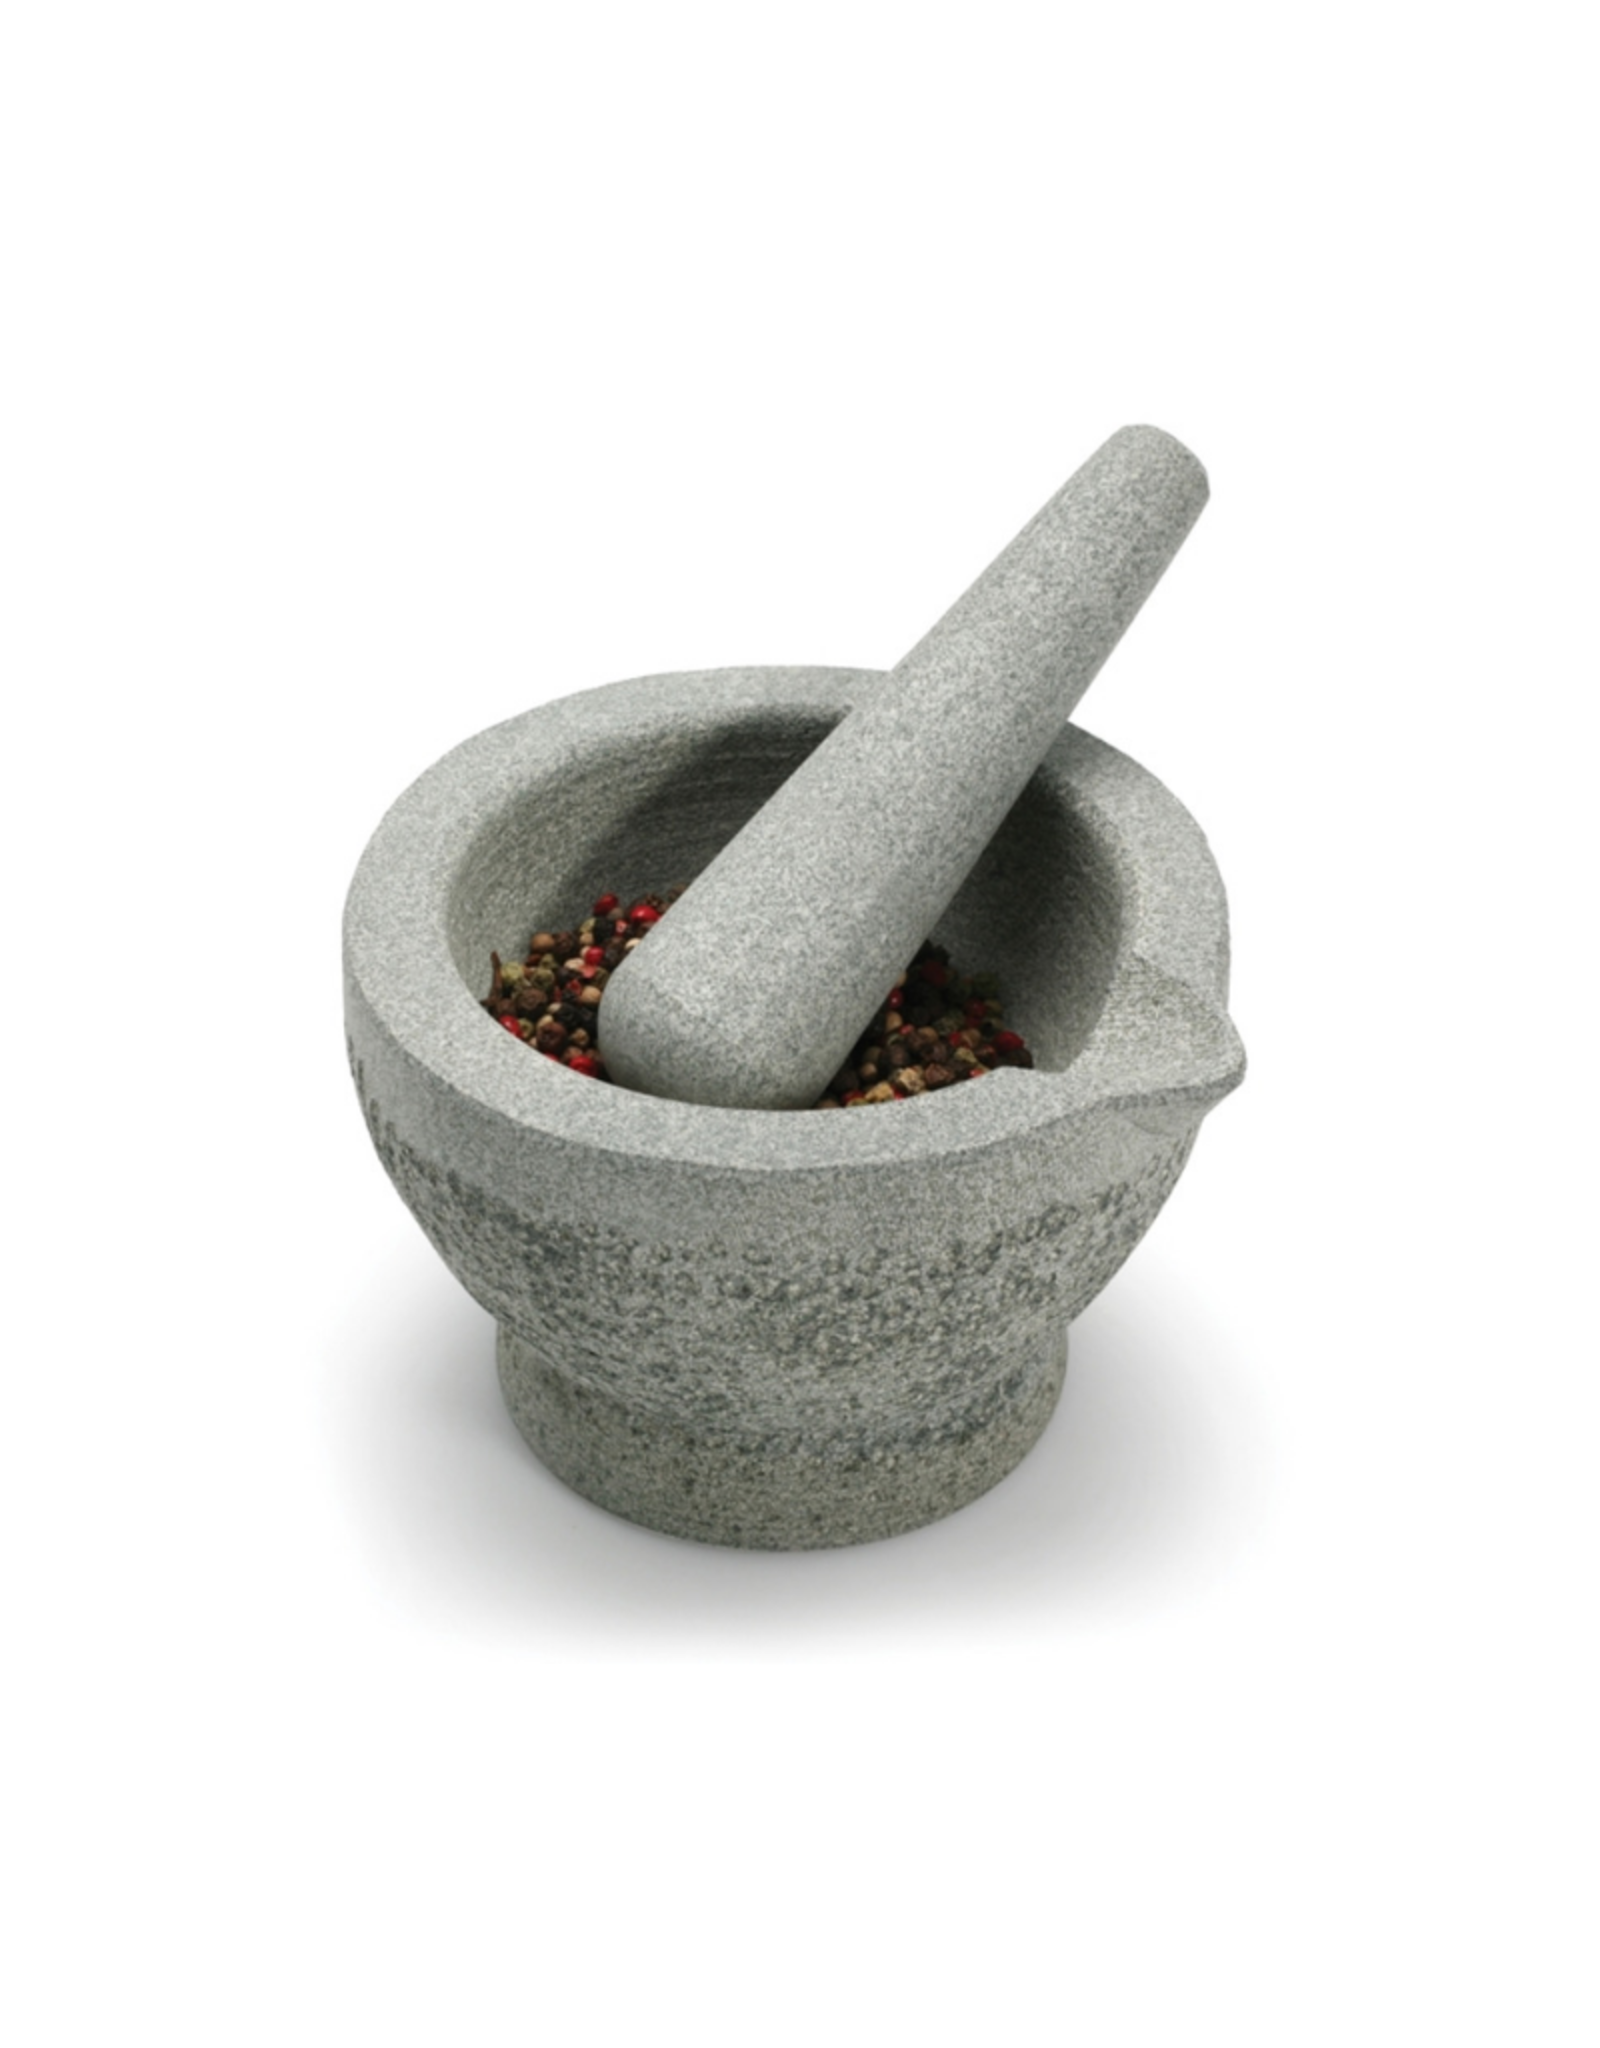 Zen Cuisine Mortier et pilon en granite 5.75'' / 12cm